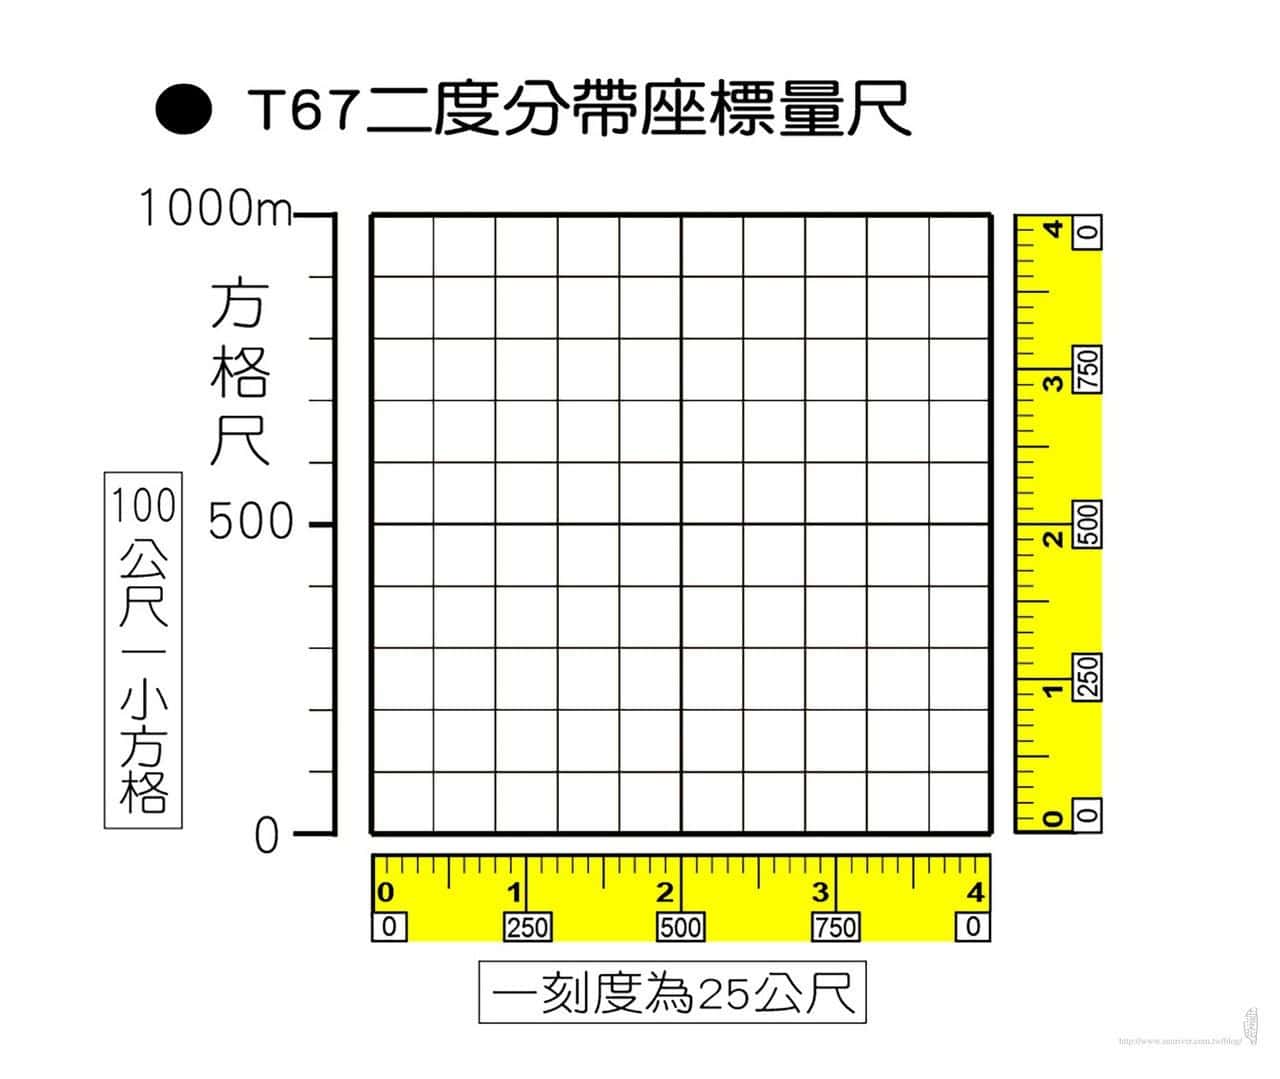 報座標與如何量測座標：T67二度分帶座標量尺分析 地圖裡附的是黃色的量尺，每一刻度為25公尺。 